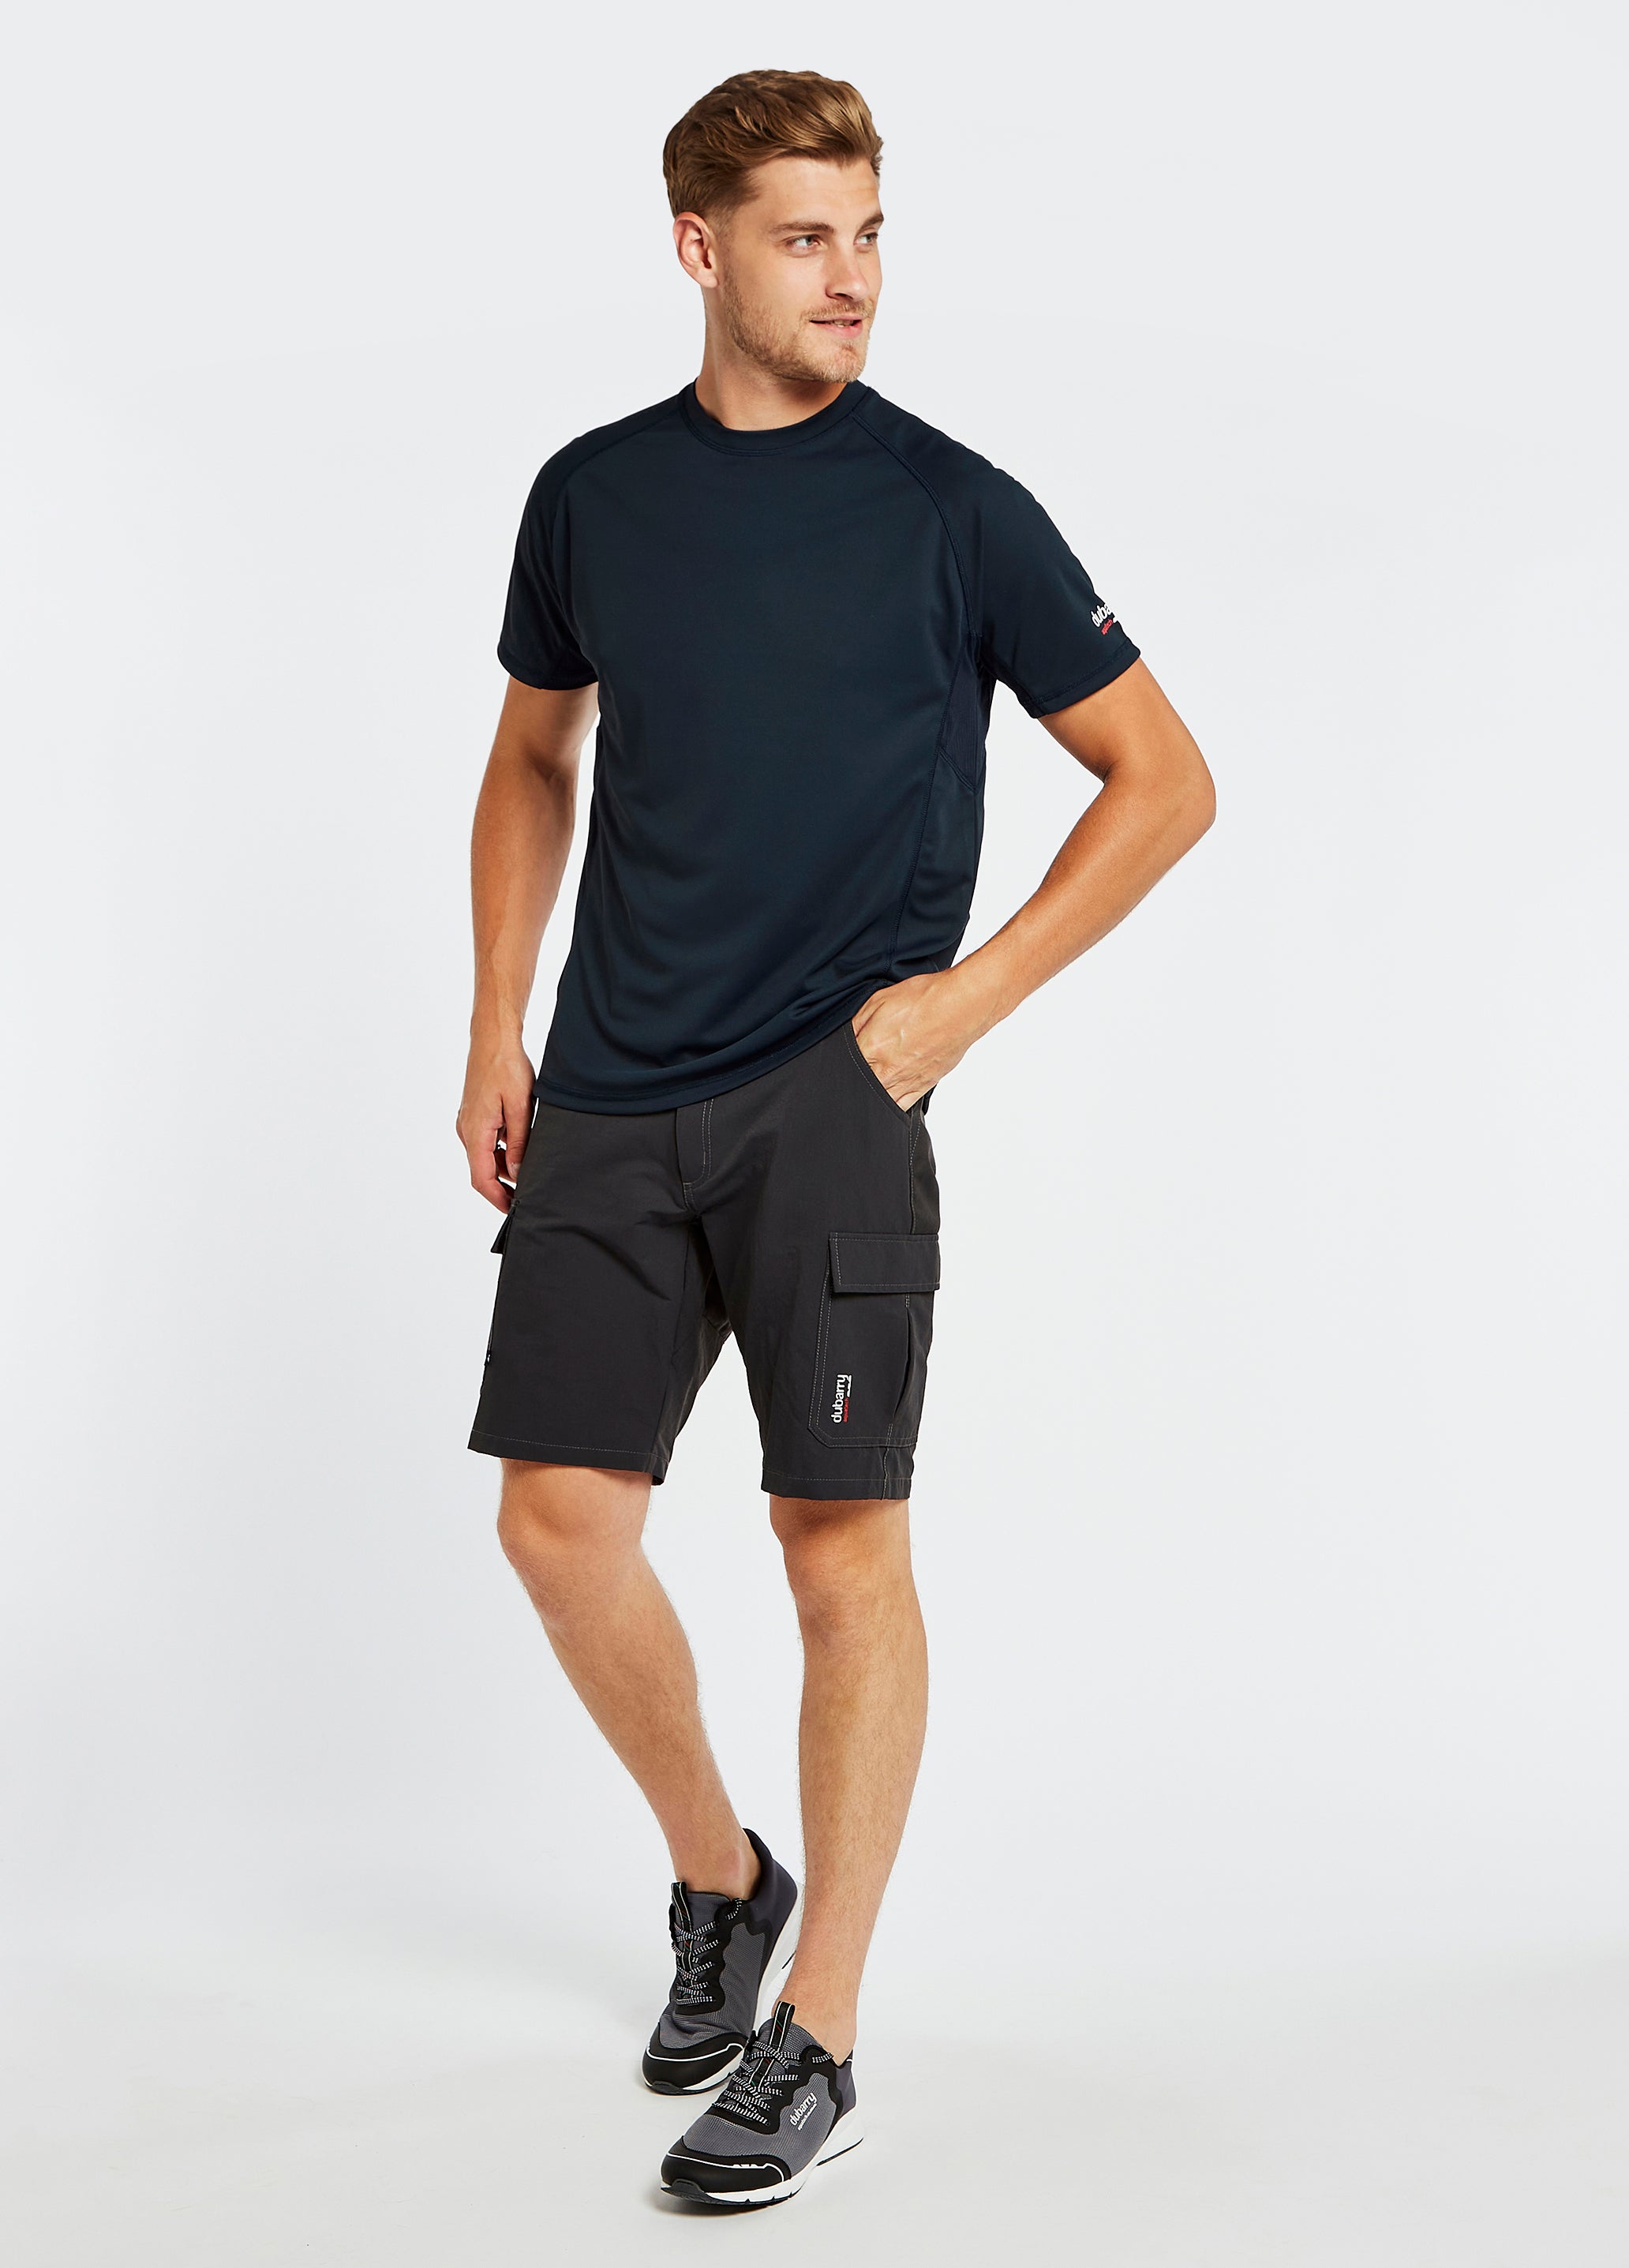 Tangier Men’s Short-Sleeved Technical T-Shirt - Navy